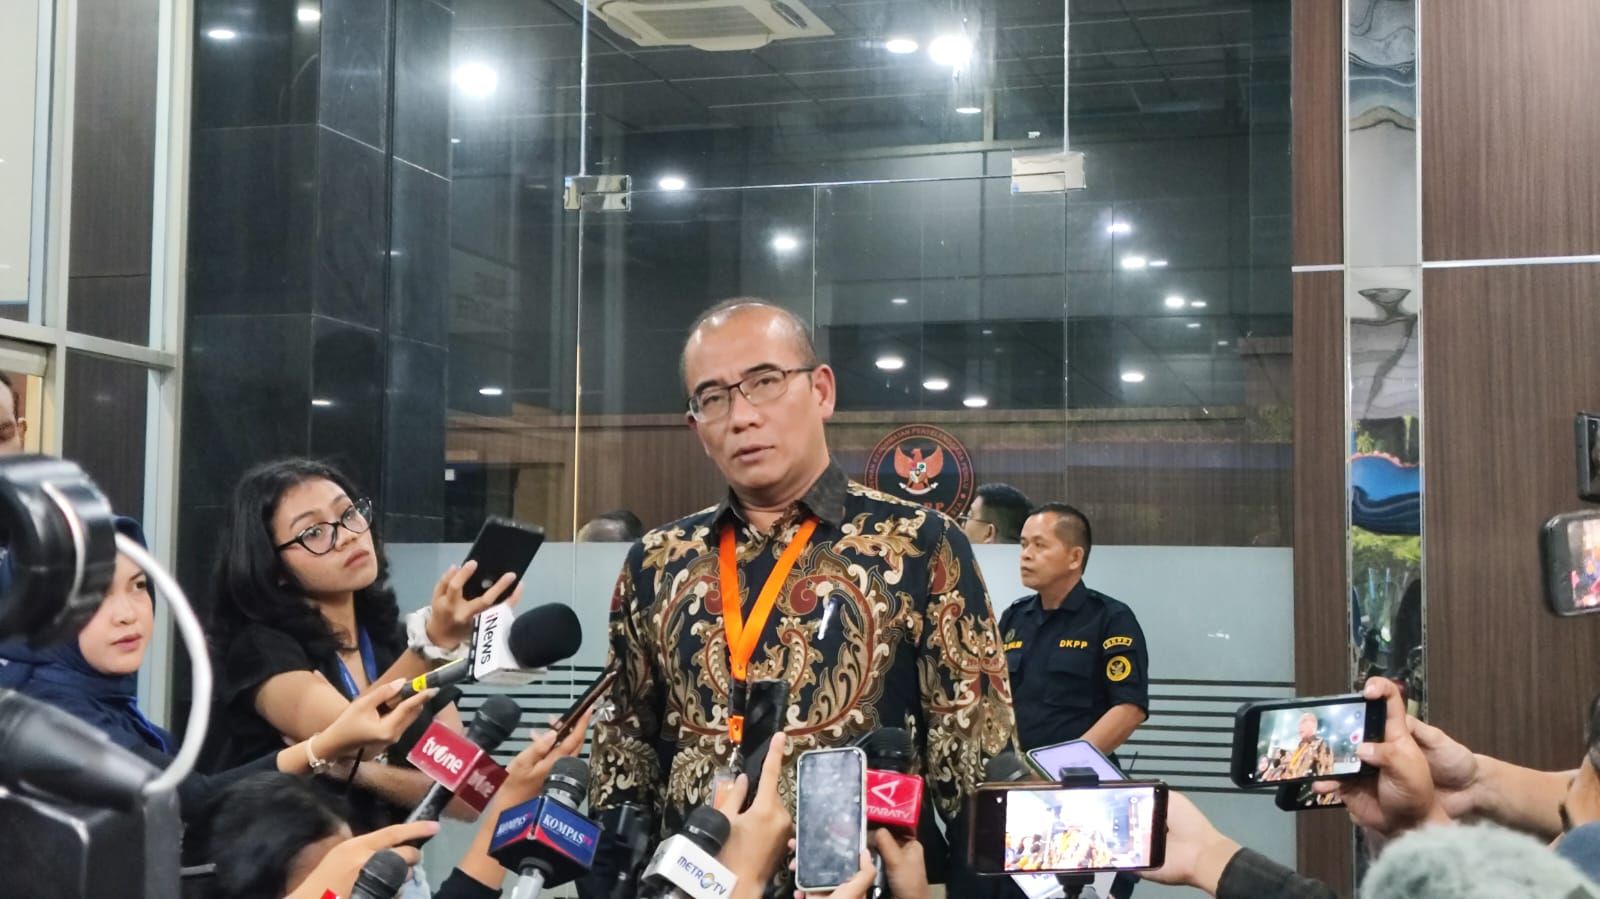 Ketua KPU Protes Aduan Asusila Jadi Konsumsi Publik, Ungkit Konsekuensi Hukum